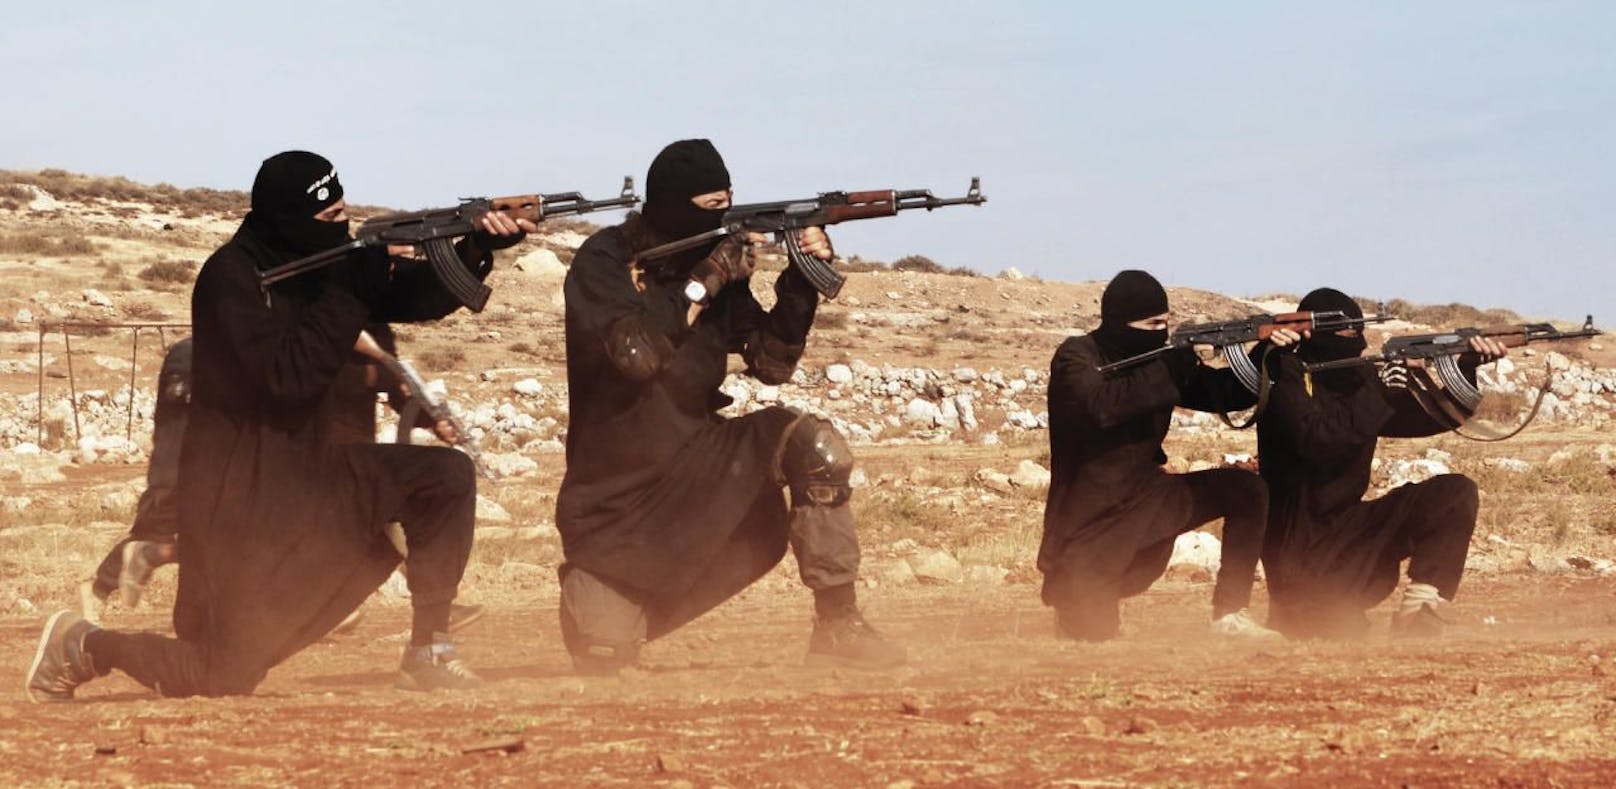 Ein Archivbild aus dem Jahr 2015 zeigt, wie IS-Terrorkämpfer mit ihren Sturmgewehren des Typs AK-47 für den kommenden Krieg üben.